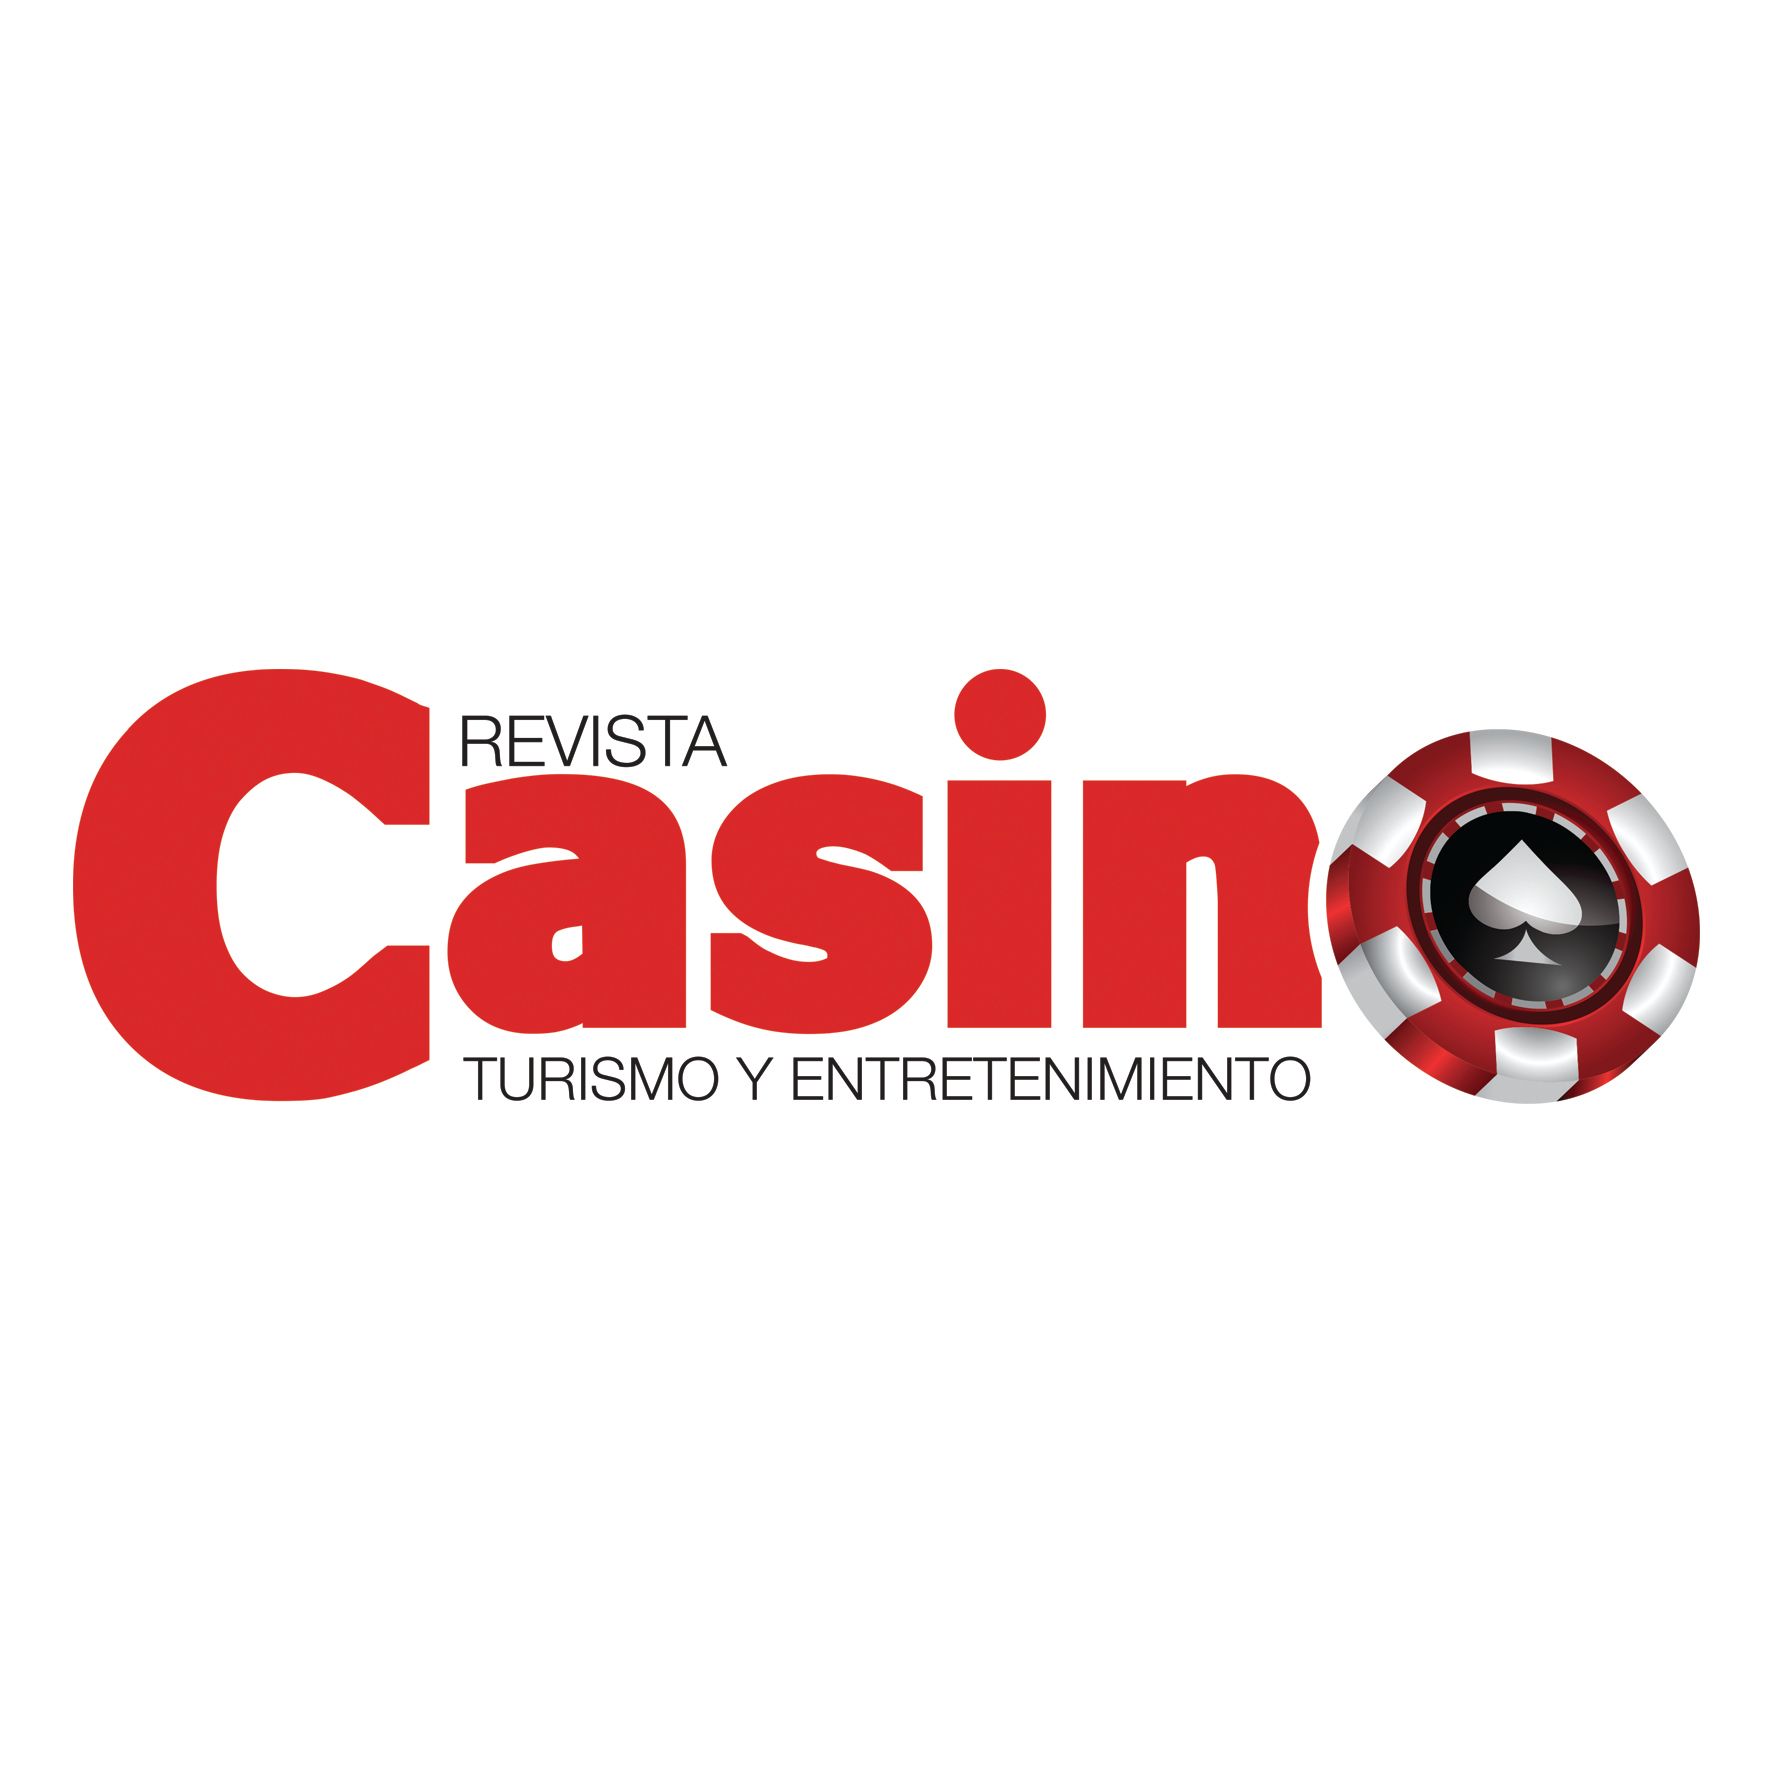 Revista CASINO